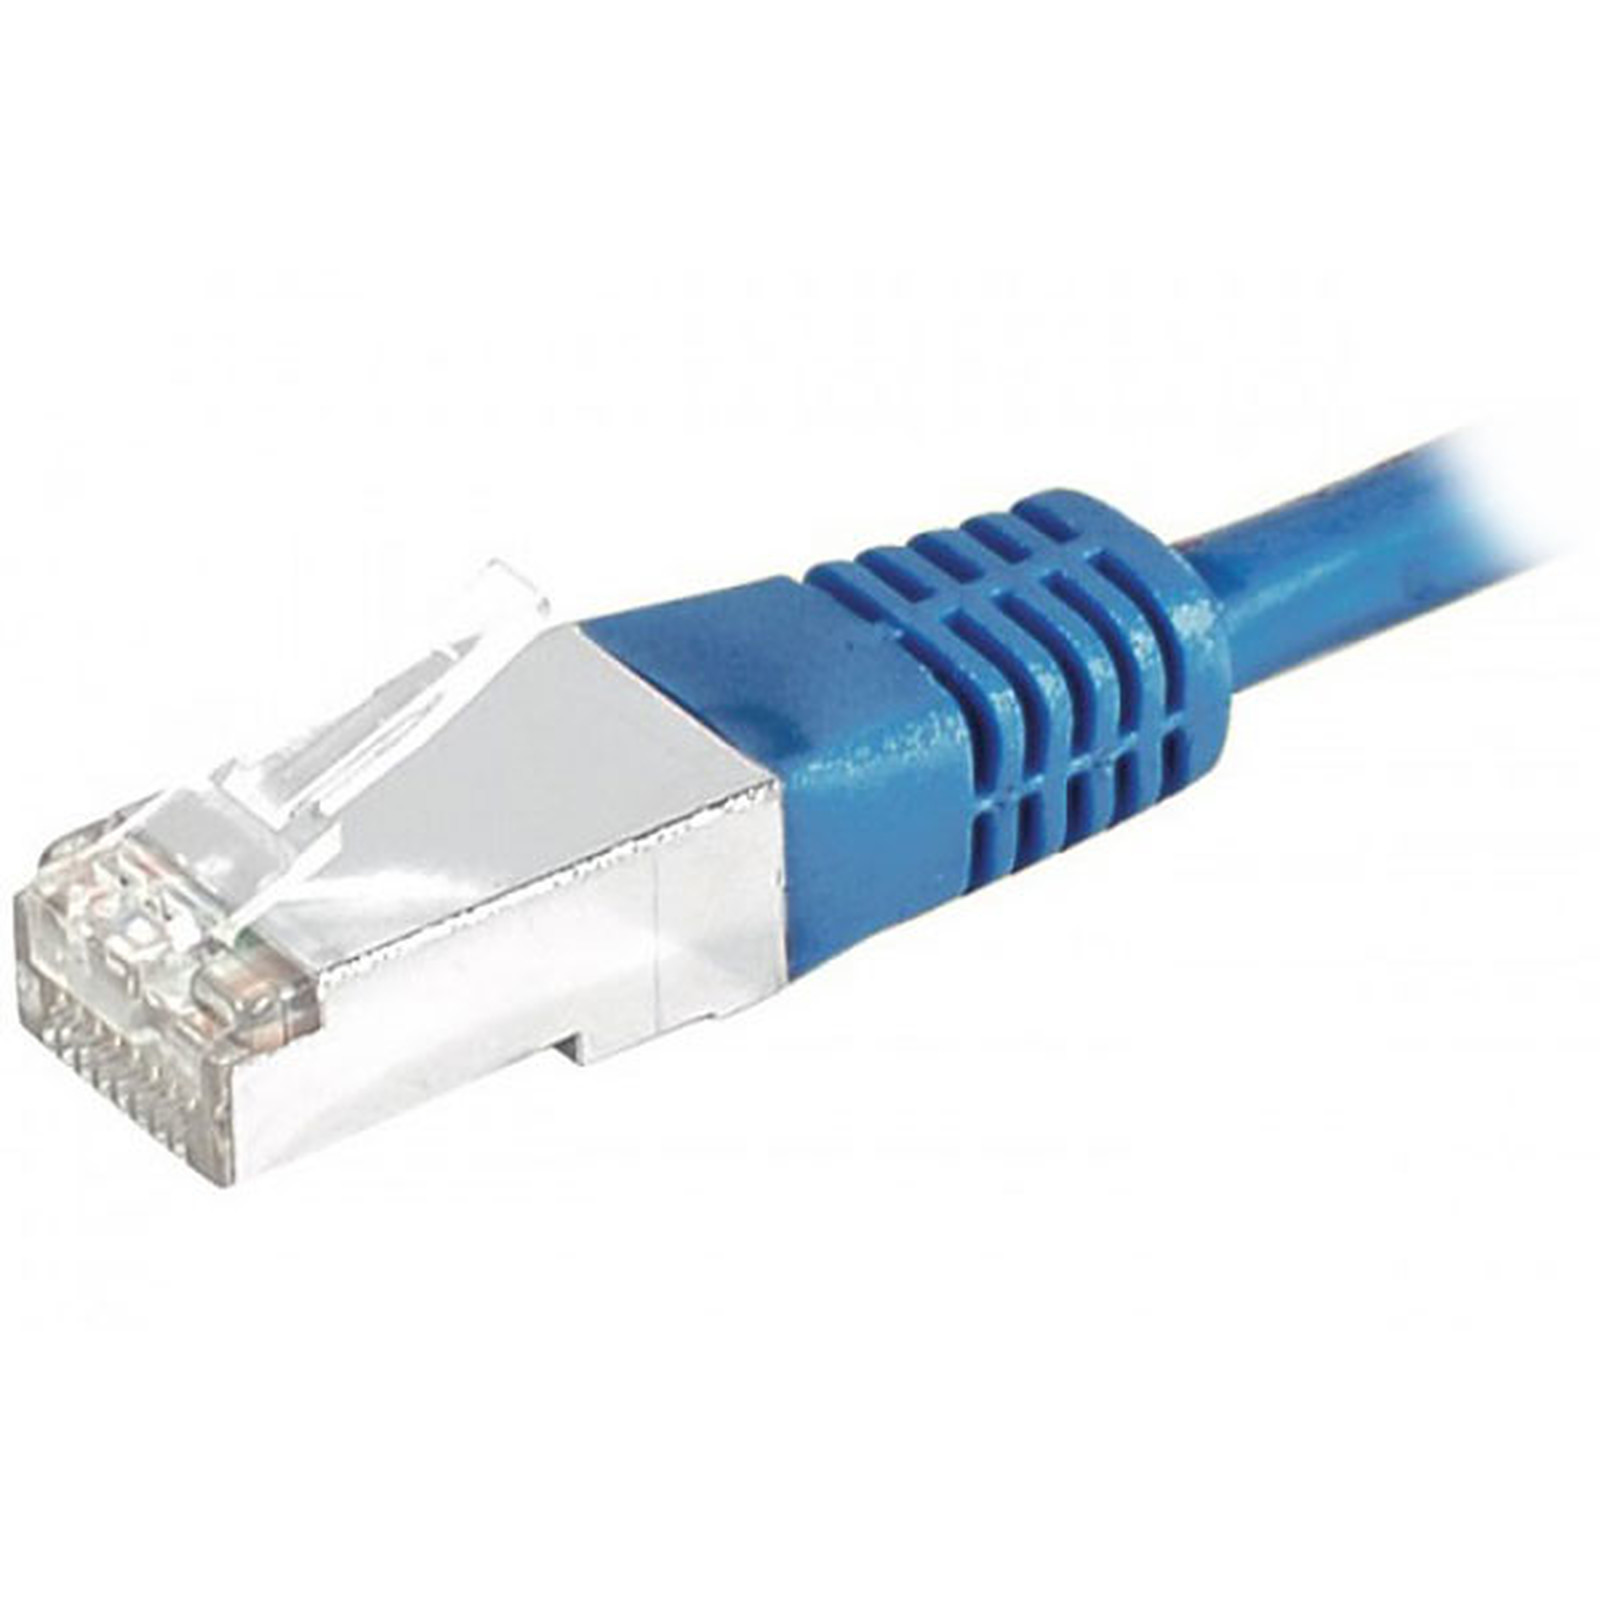 Cable RJ45 categorie 6 S/FTP 15 m (Bleu) - Cable RJ45 Generique